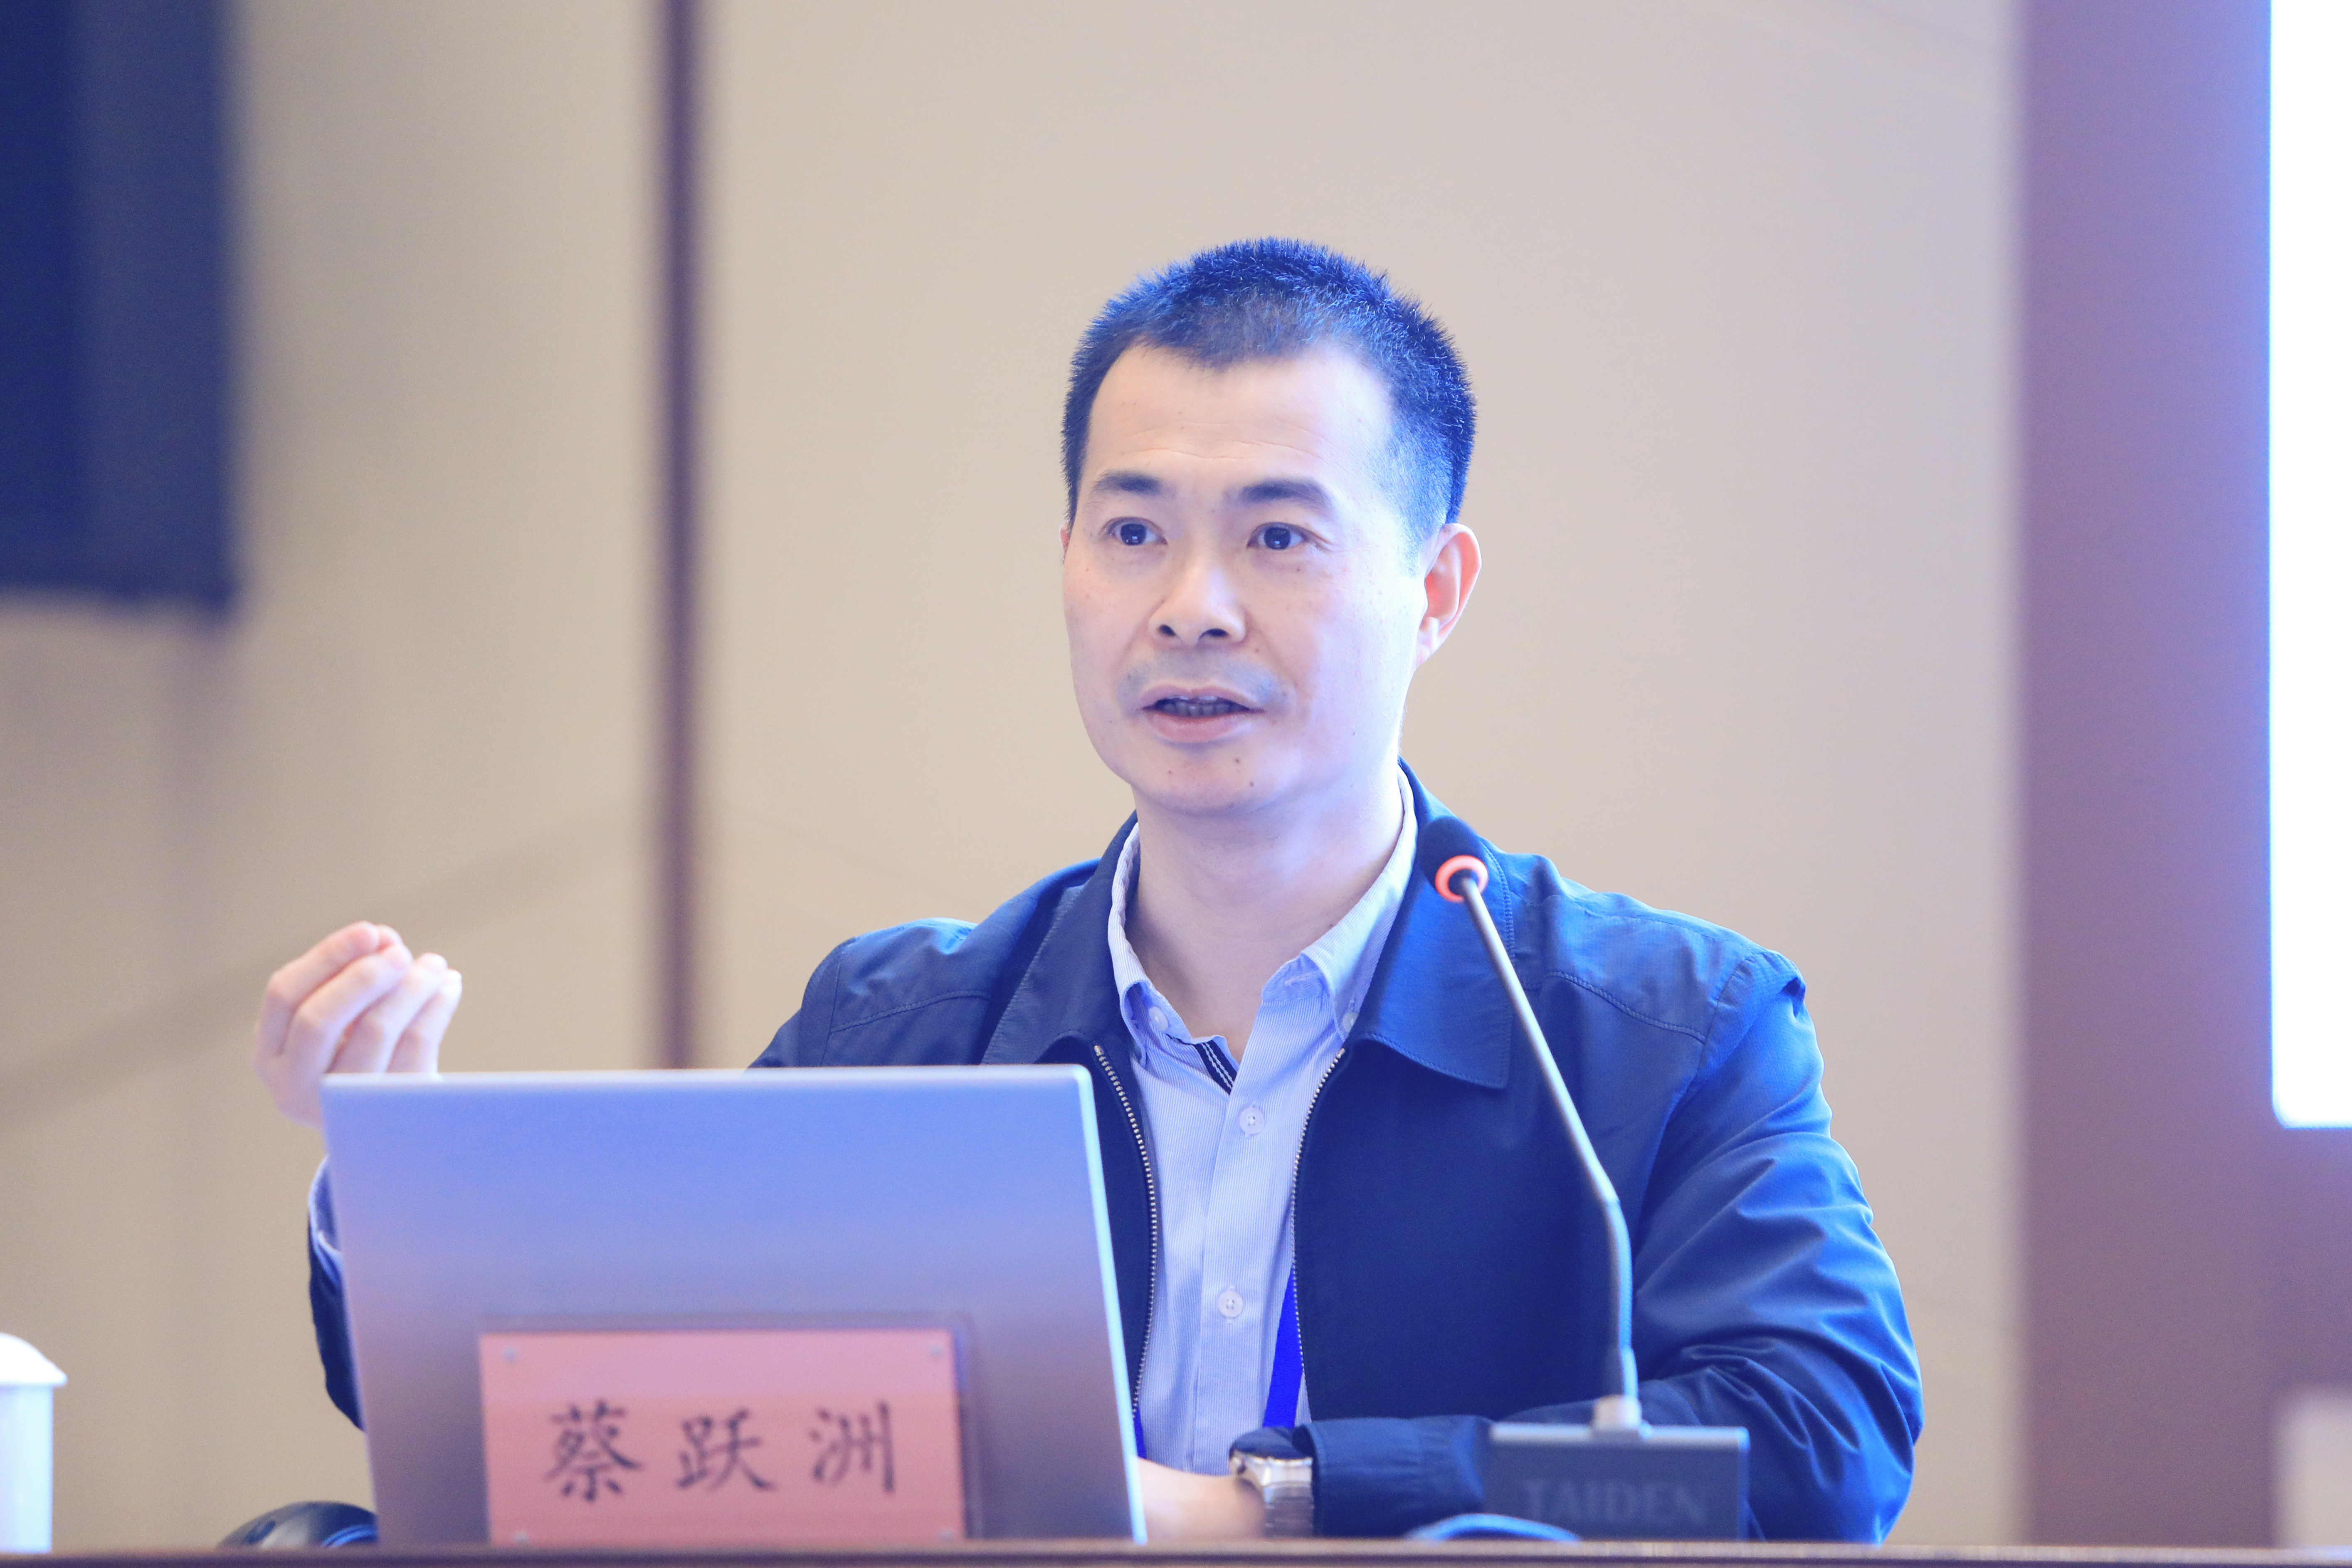 中国社会科学院数量经济与技术经济研究所数字经济研究室主任蔡跃洲作学术报告